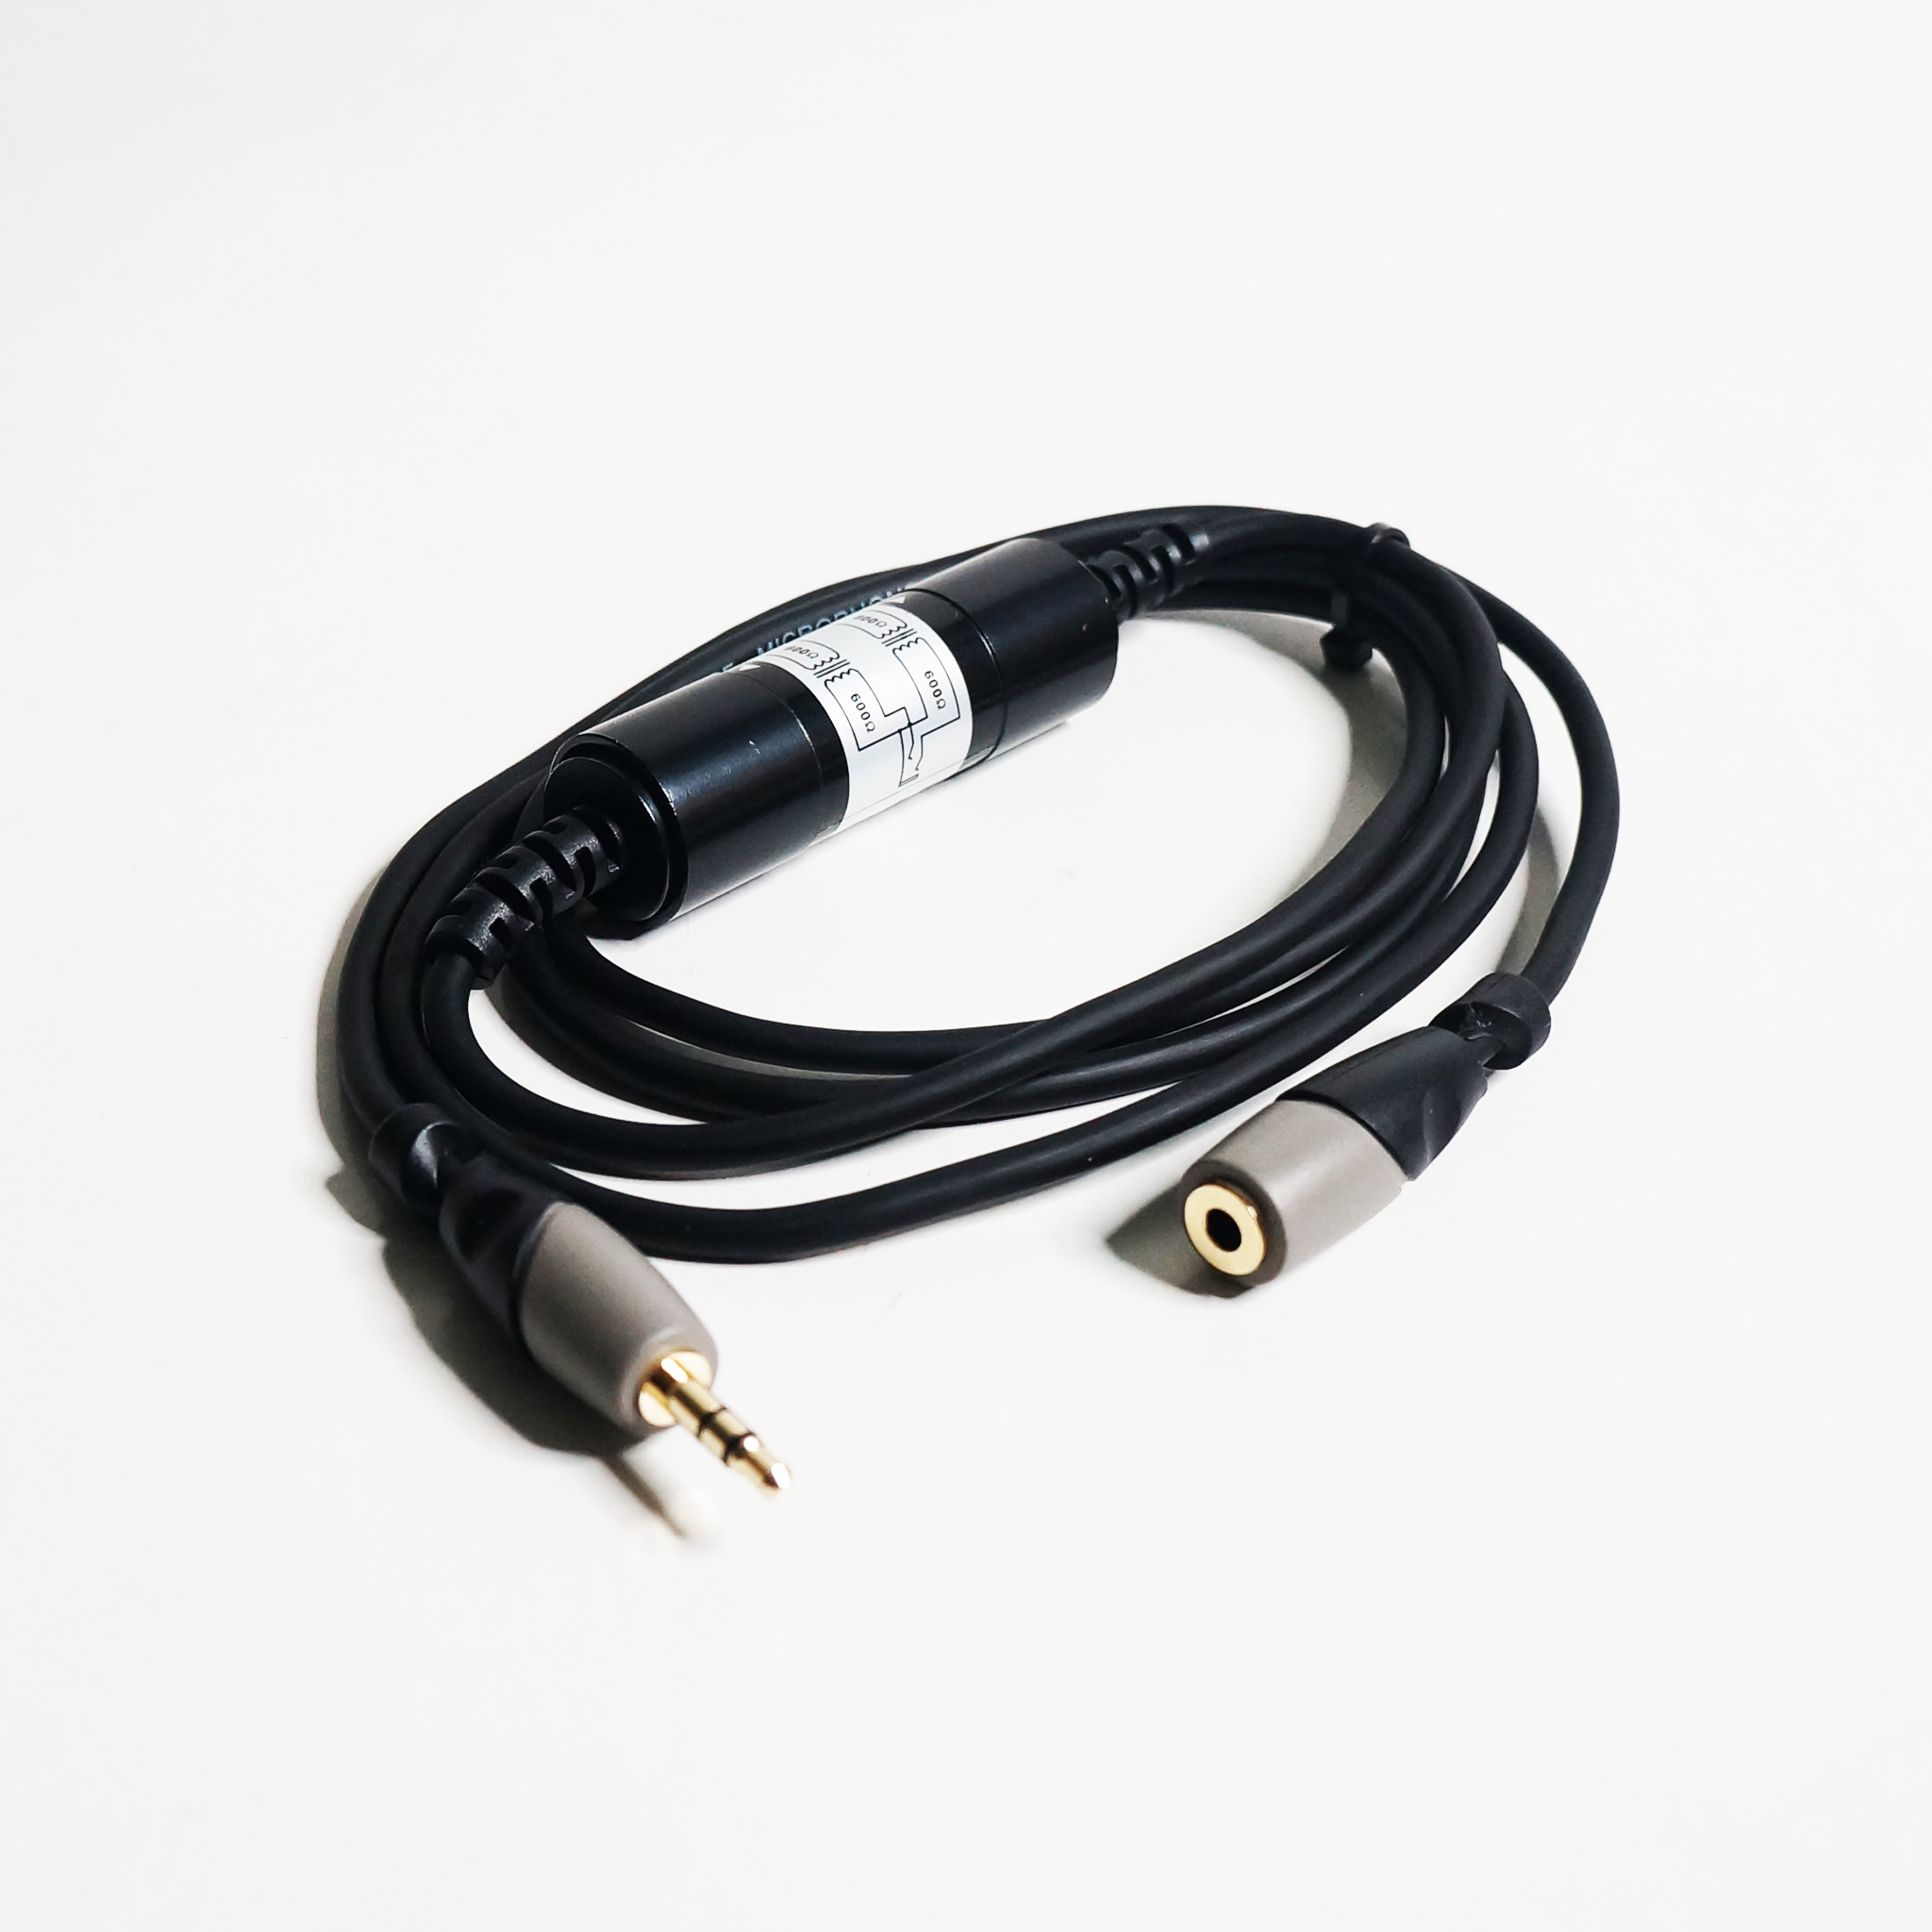 Soundking BJJ302-1 3.5mm to Extension Audio Noise Eliminator